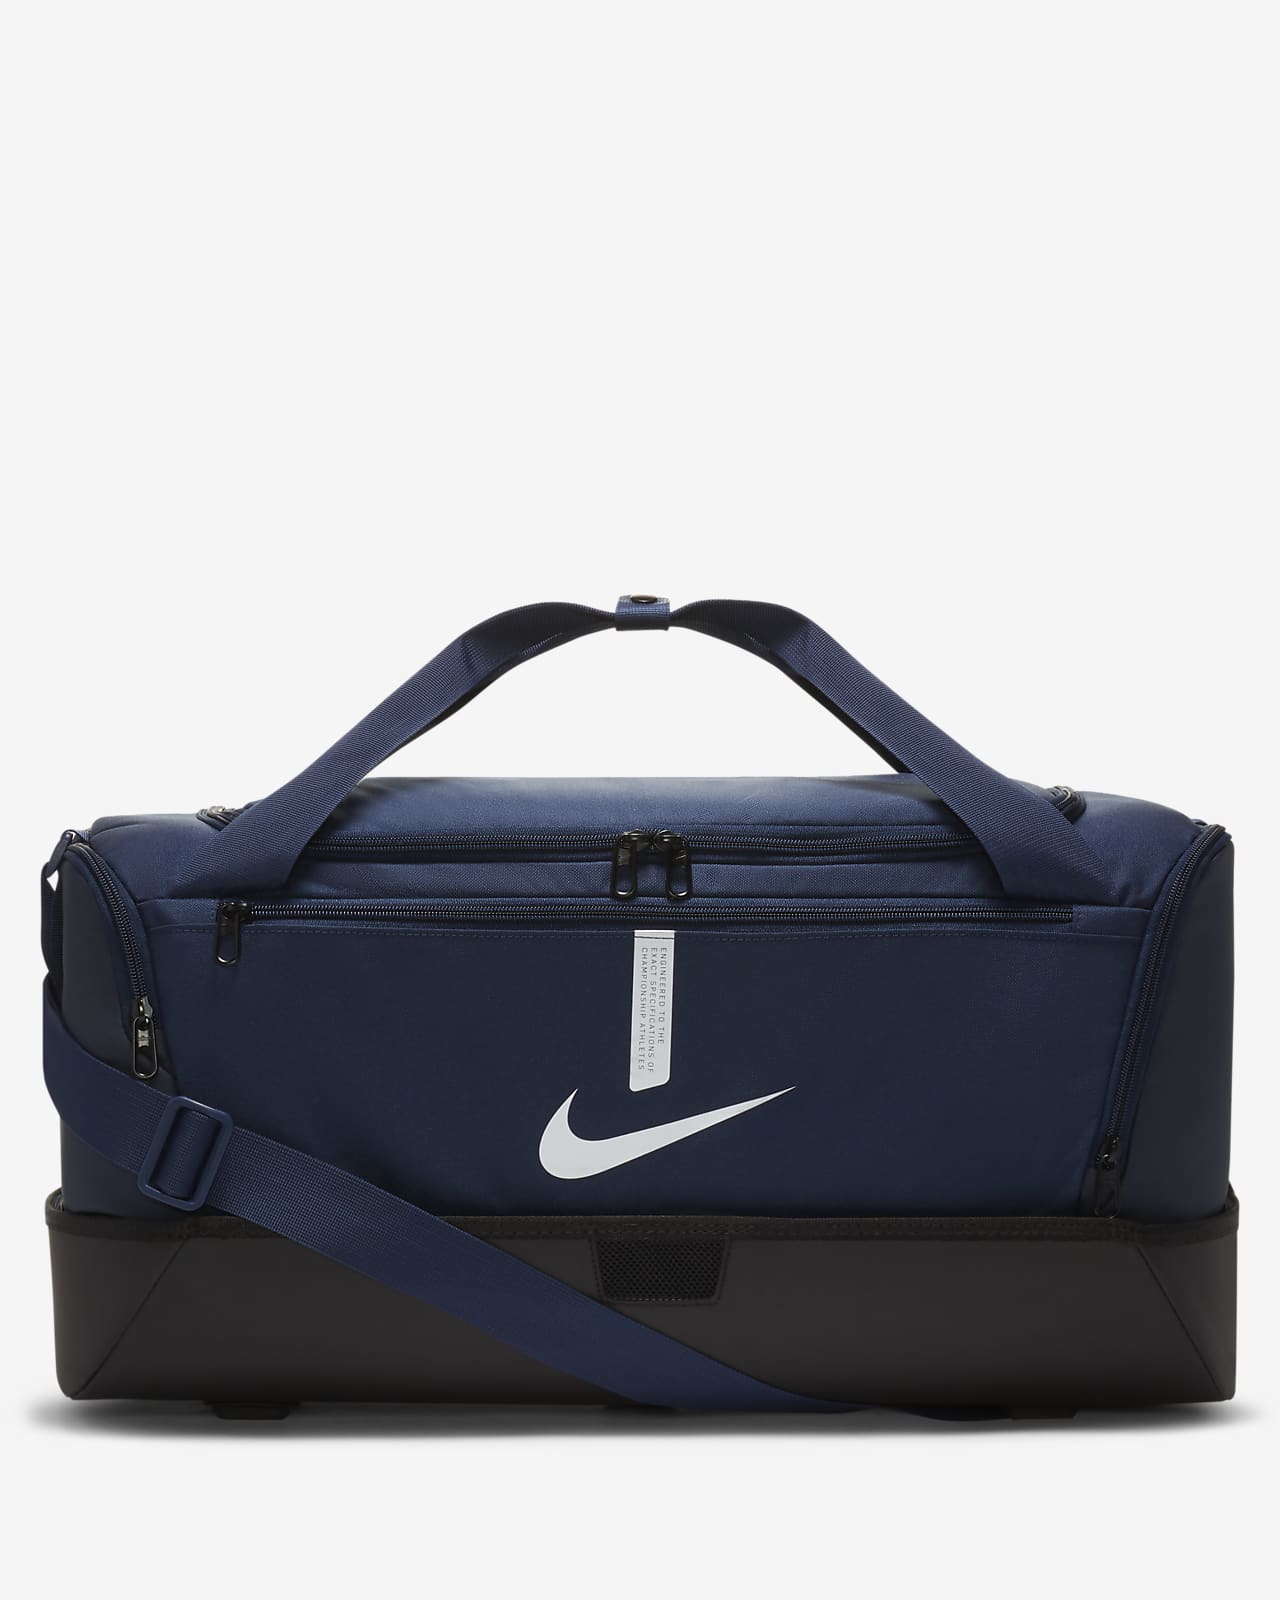 Wzmacniana torba piłkarska Nike Academy Team (średnia, 37 l)